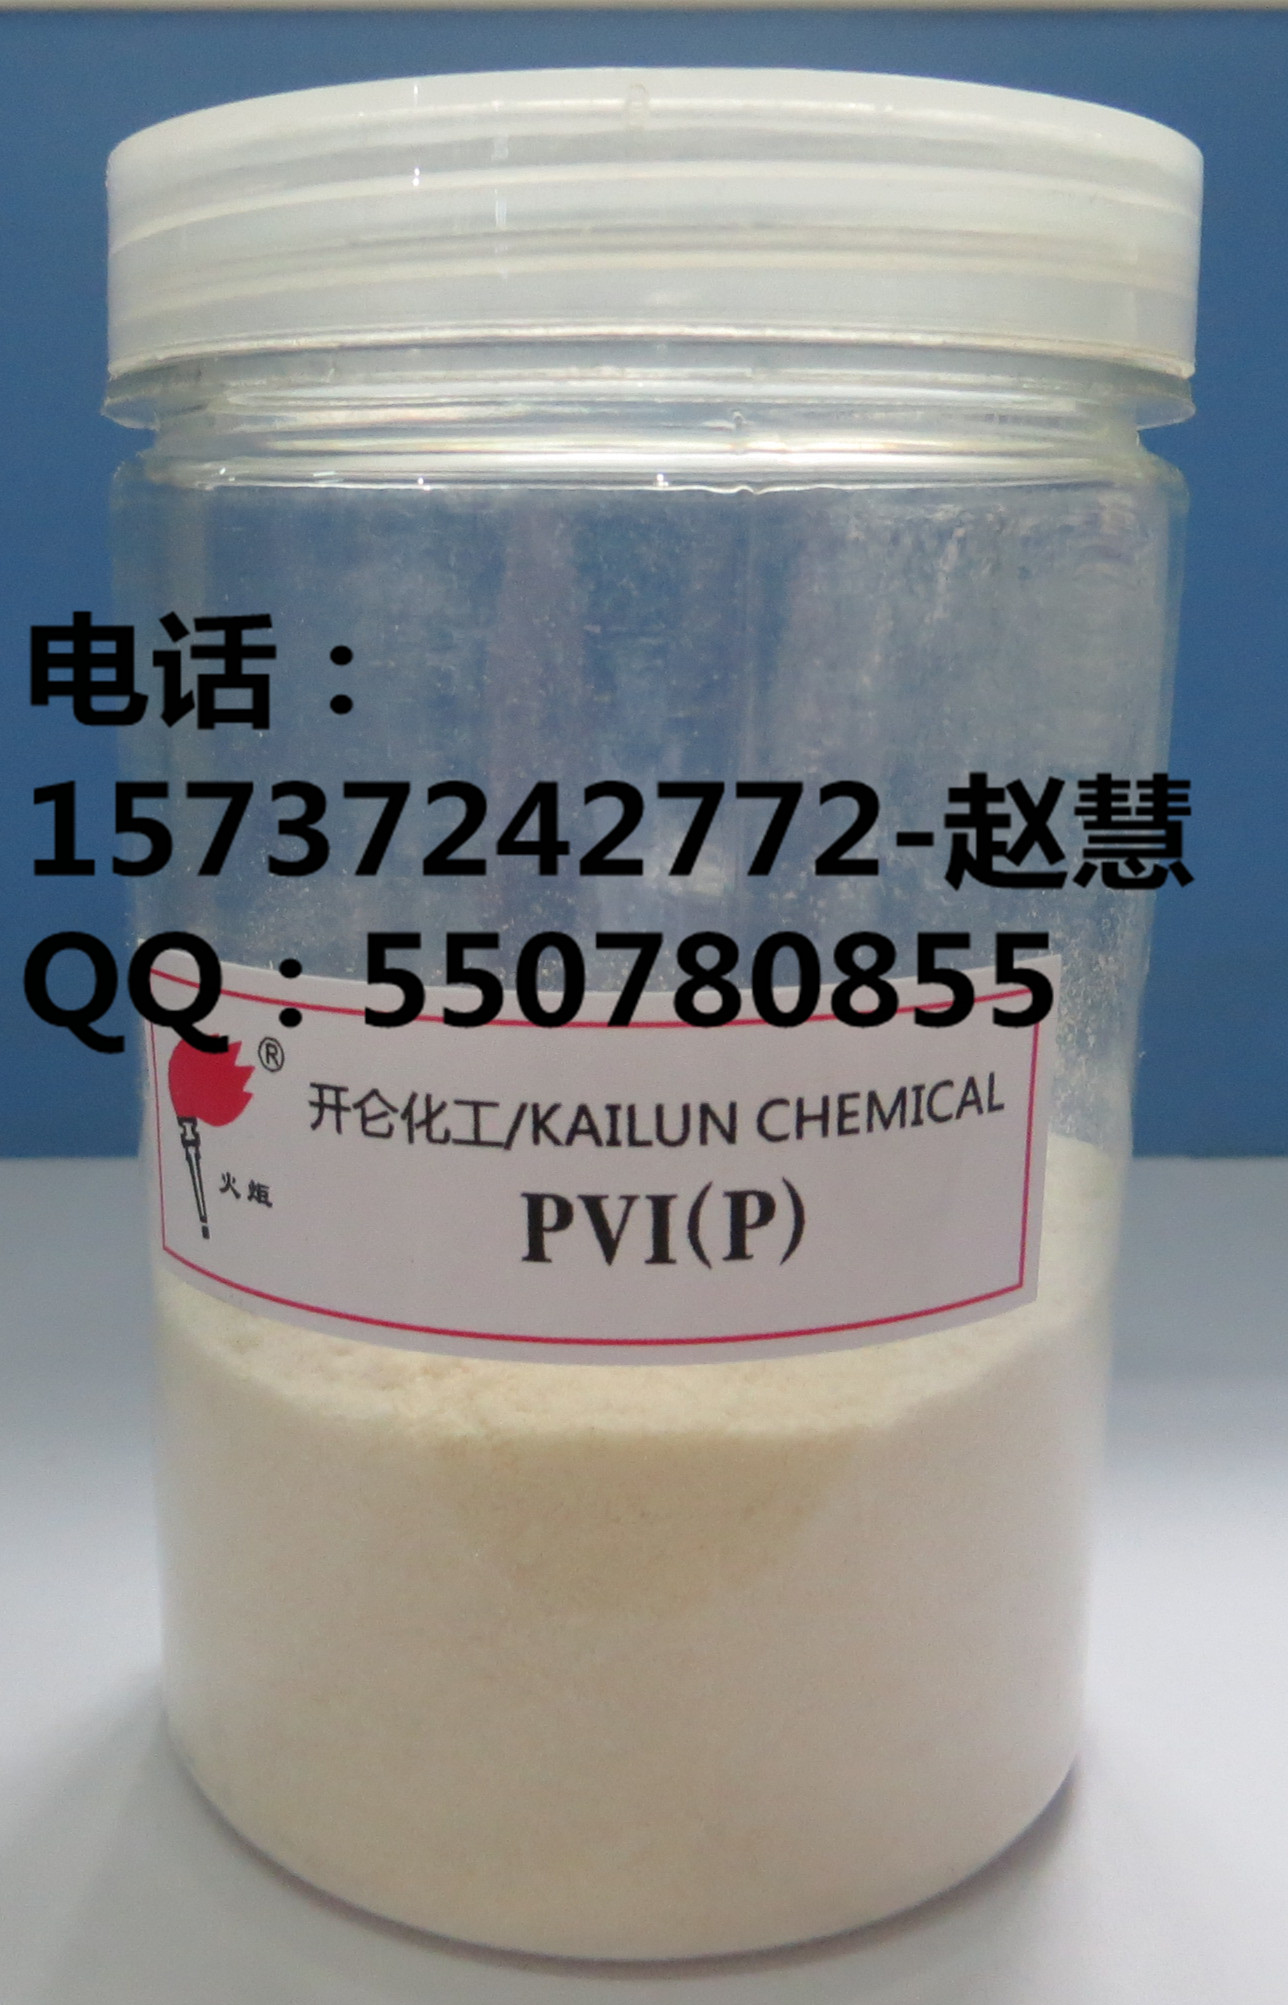 橡胶助剂-橡胶防焦剂PVI/CTP,Rubber Chemical-Rubber Antiscorching Agent PVI/CTP